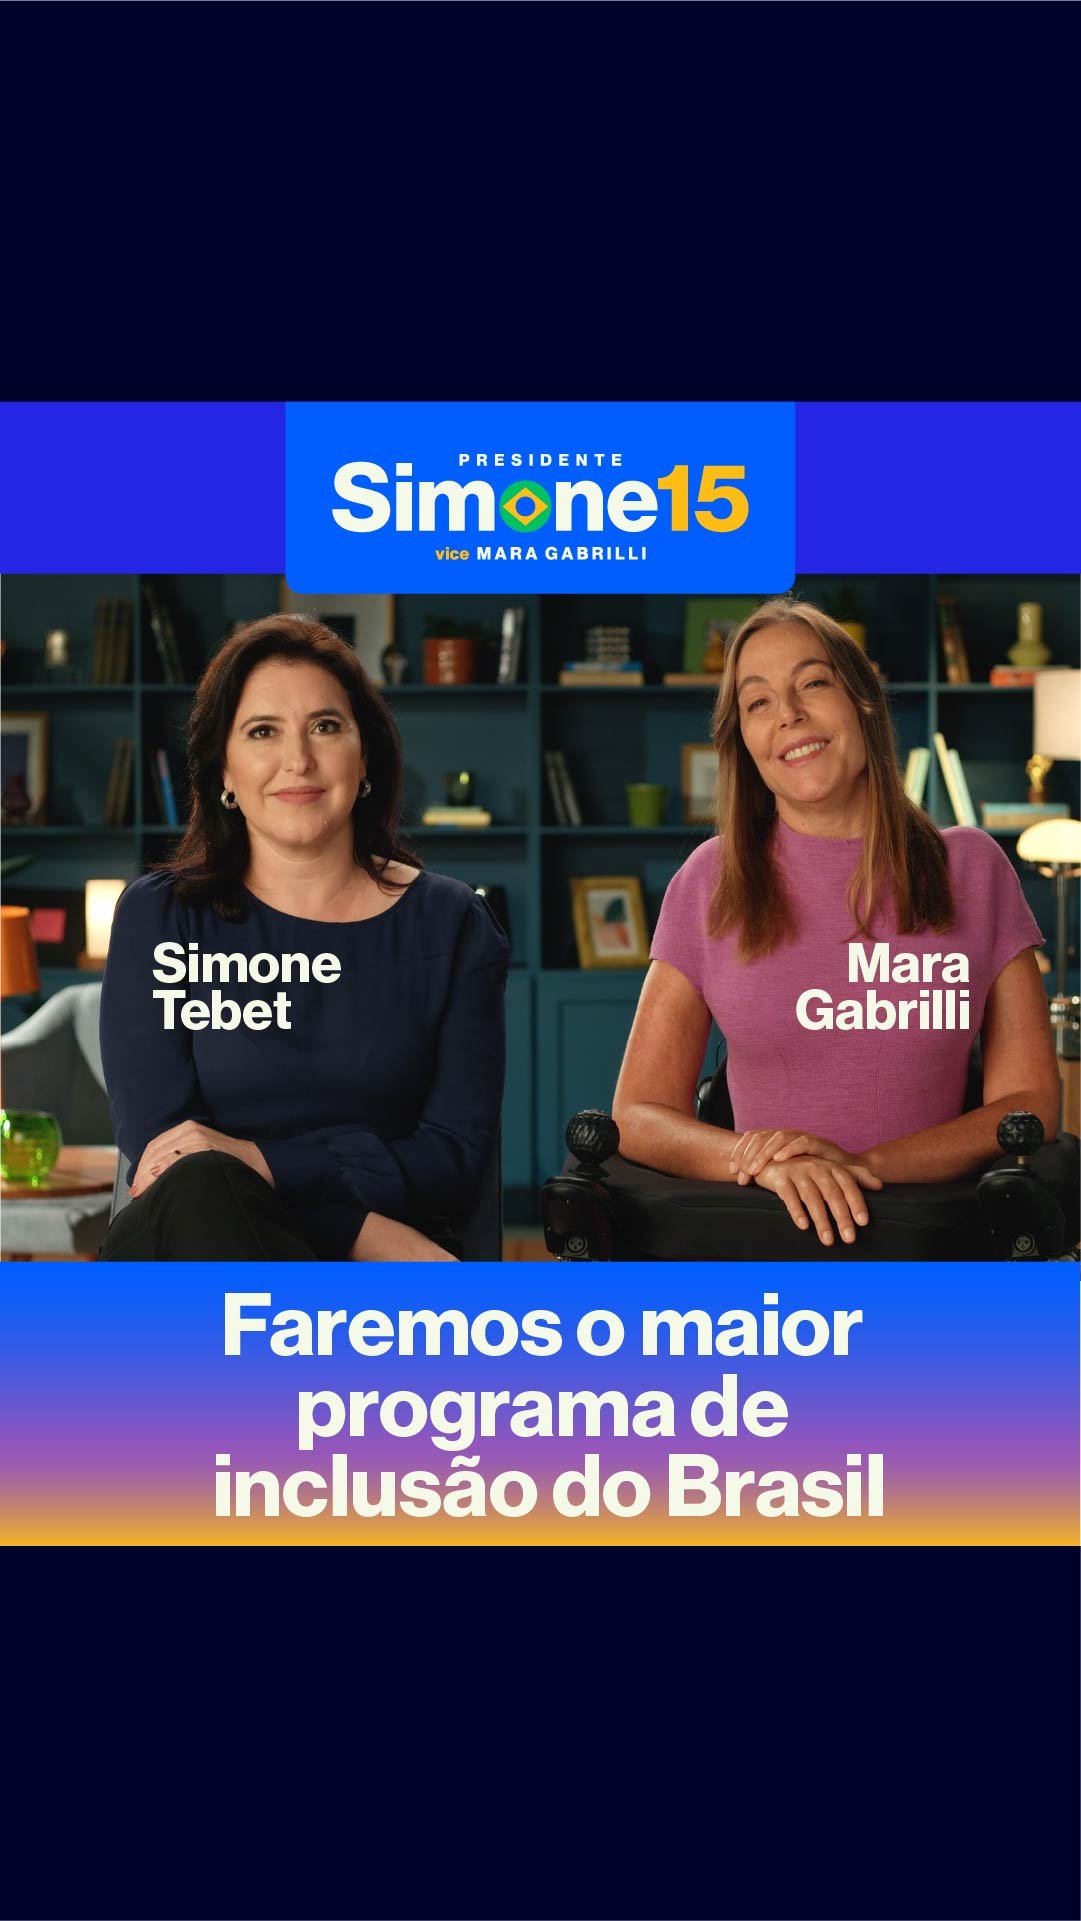 Faremos o maior programa de inclusão do Brasil